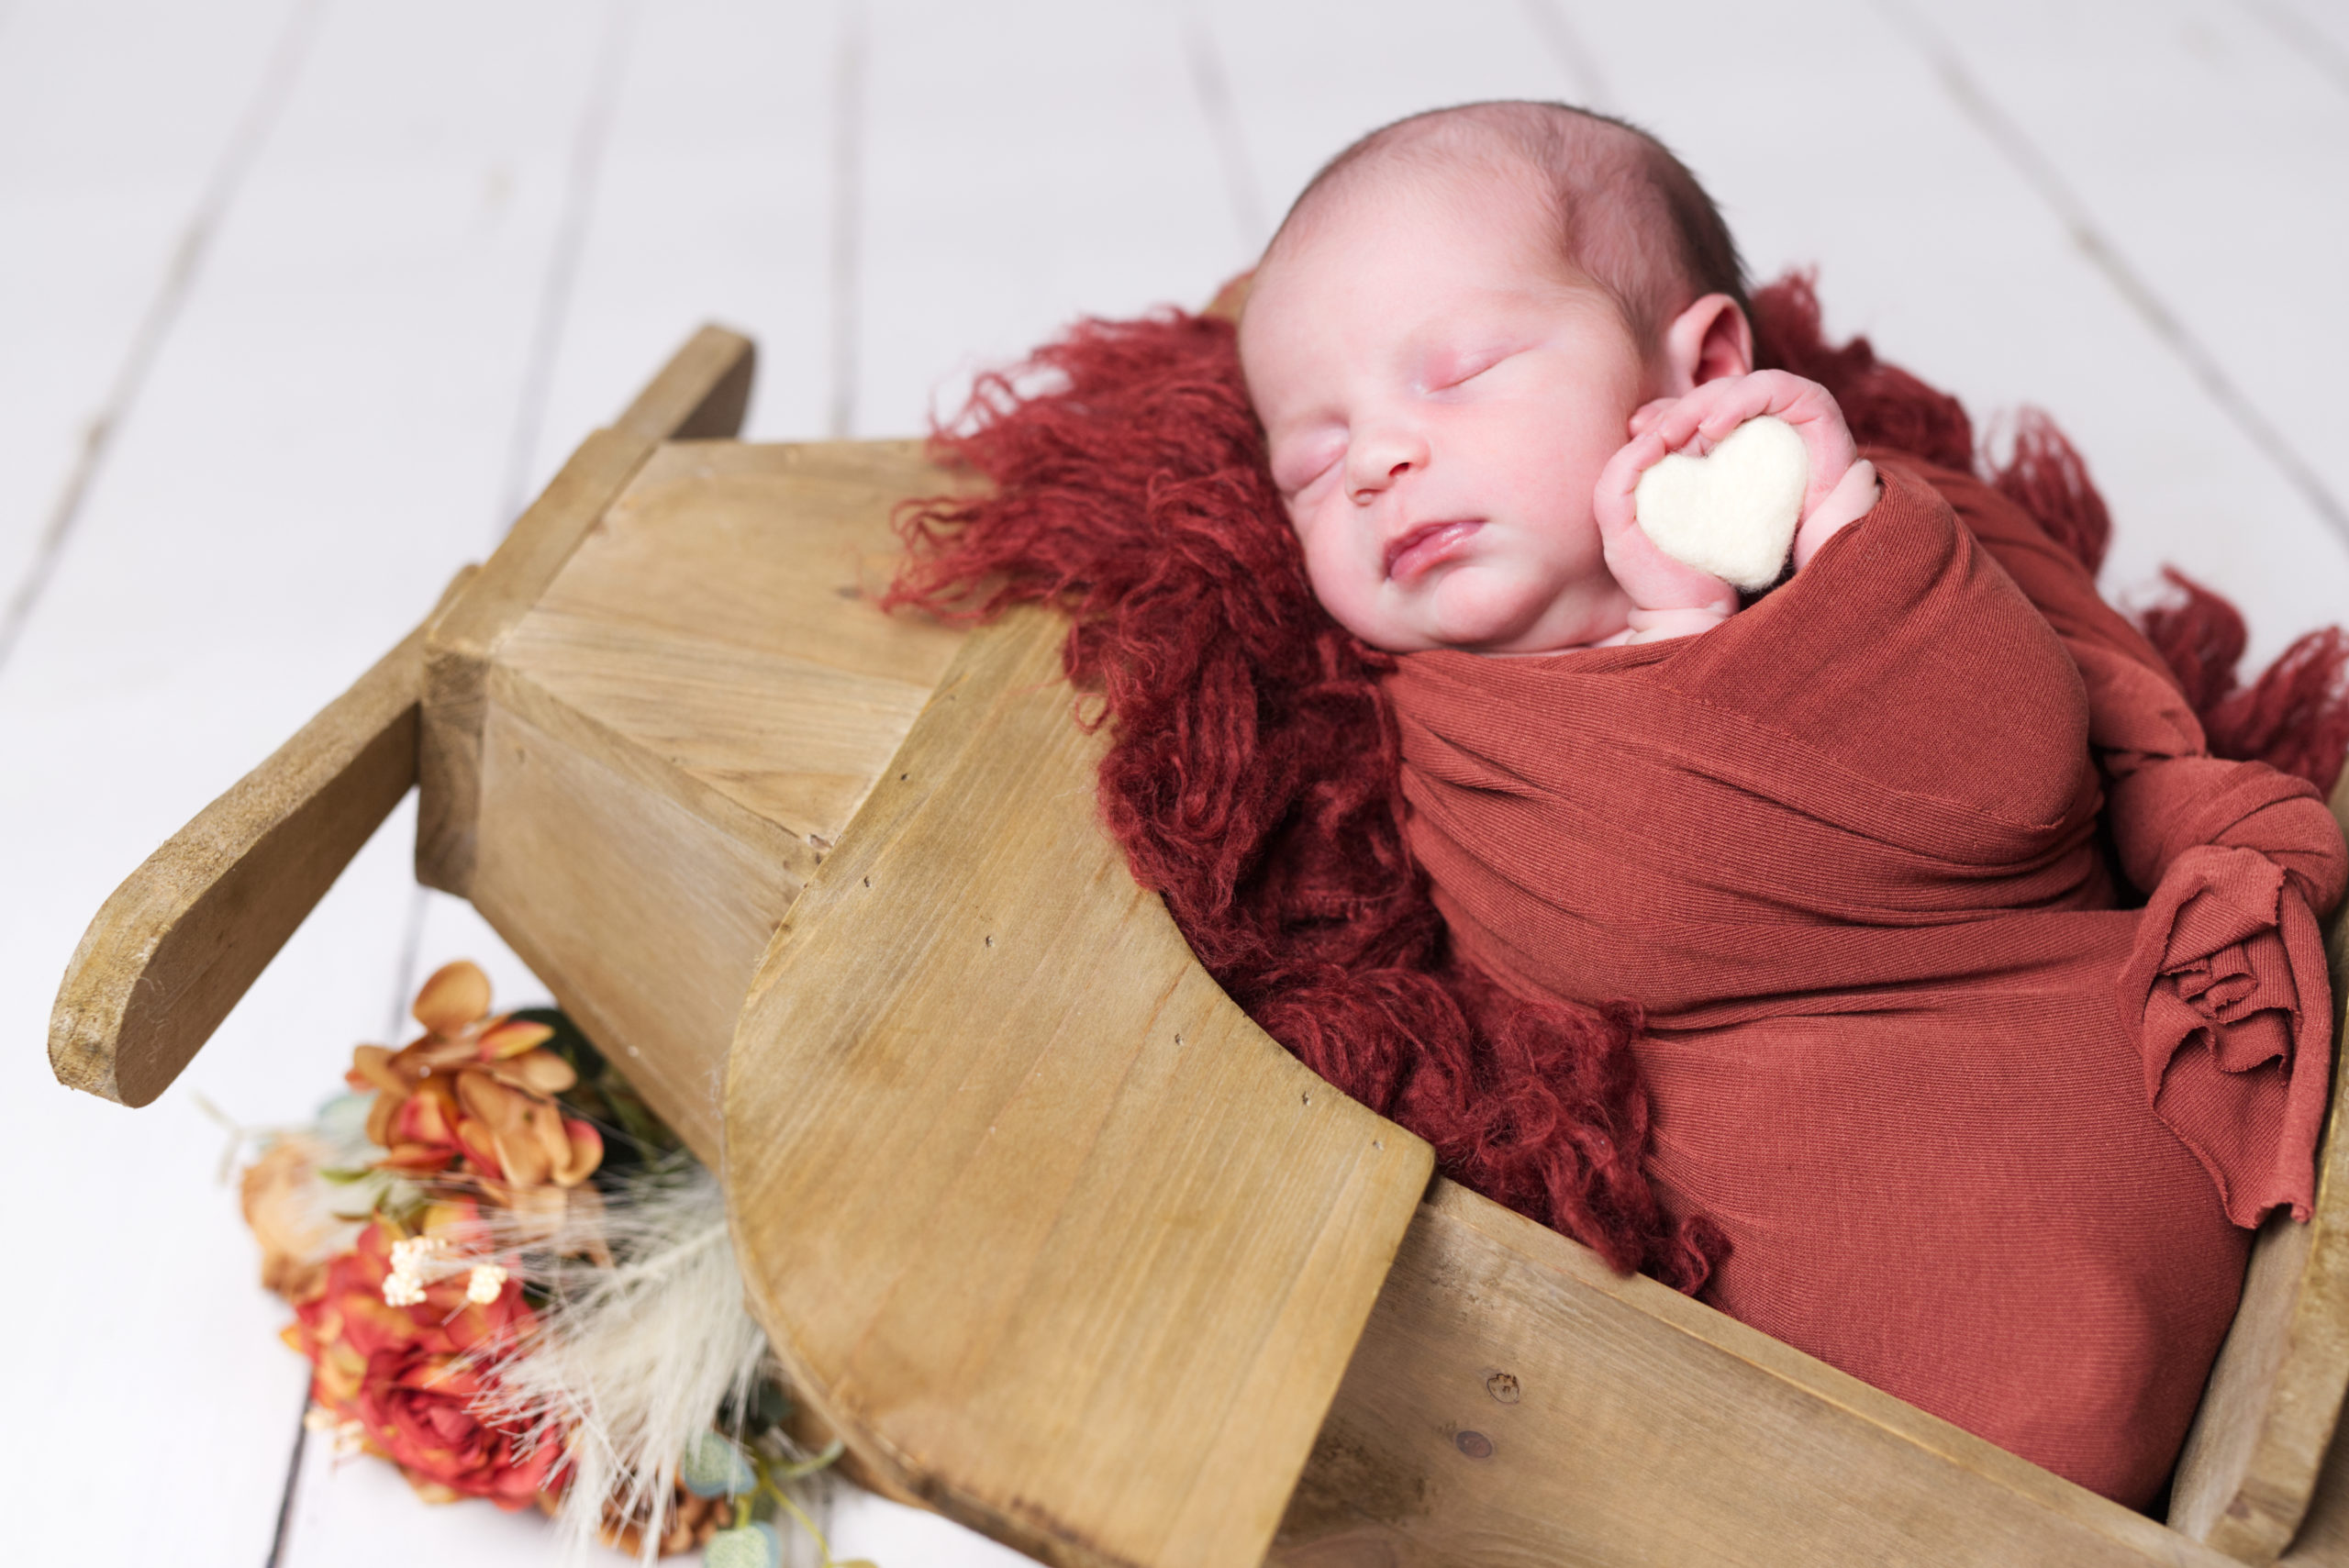 Lire la suite à propos de l’article Les 6 types de séances photos nouveau-né, bébé et famille que je vous propose